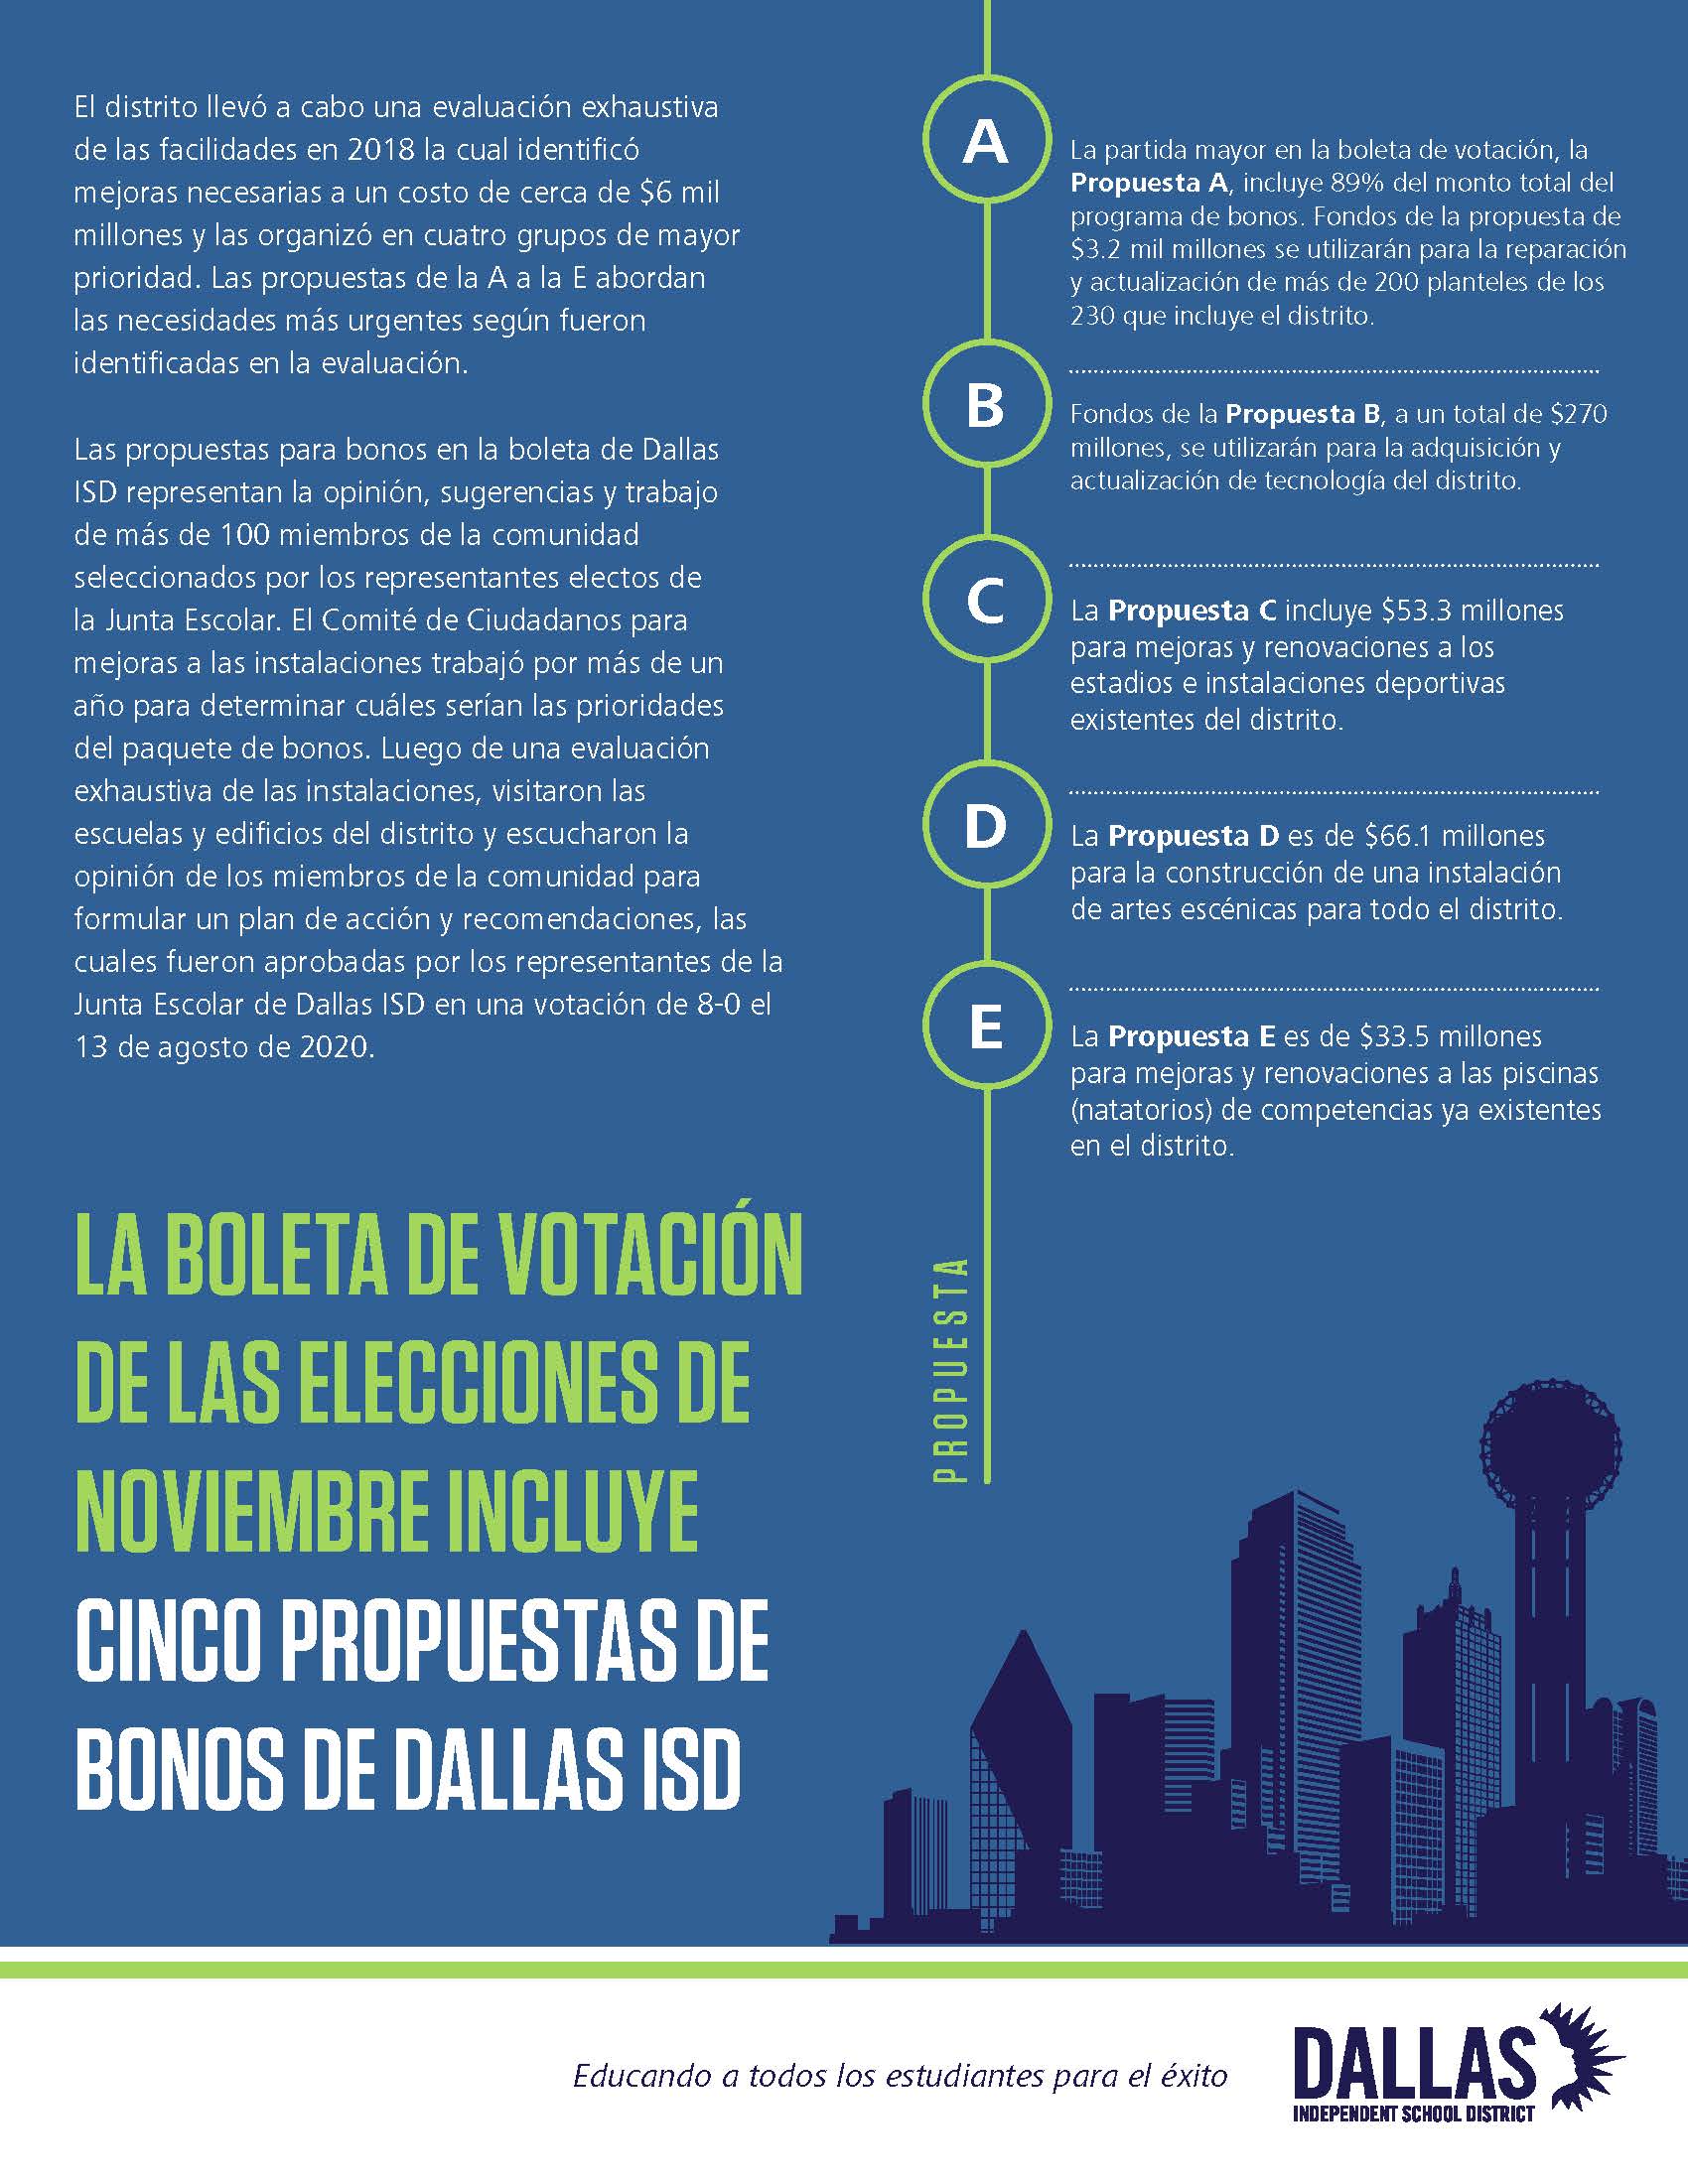 Detalles sobre las cinco propuestas del programa de bonos de Dallas ISD incluidas en la boleta electoral de noviembre.